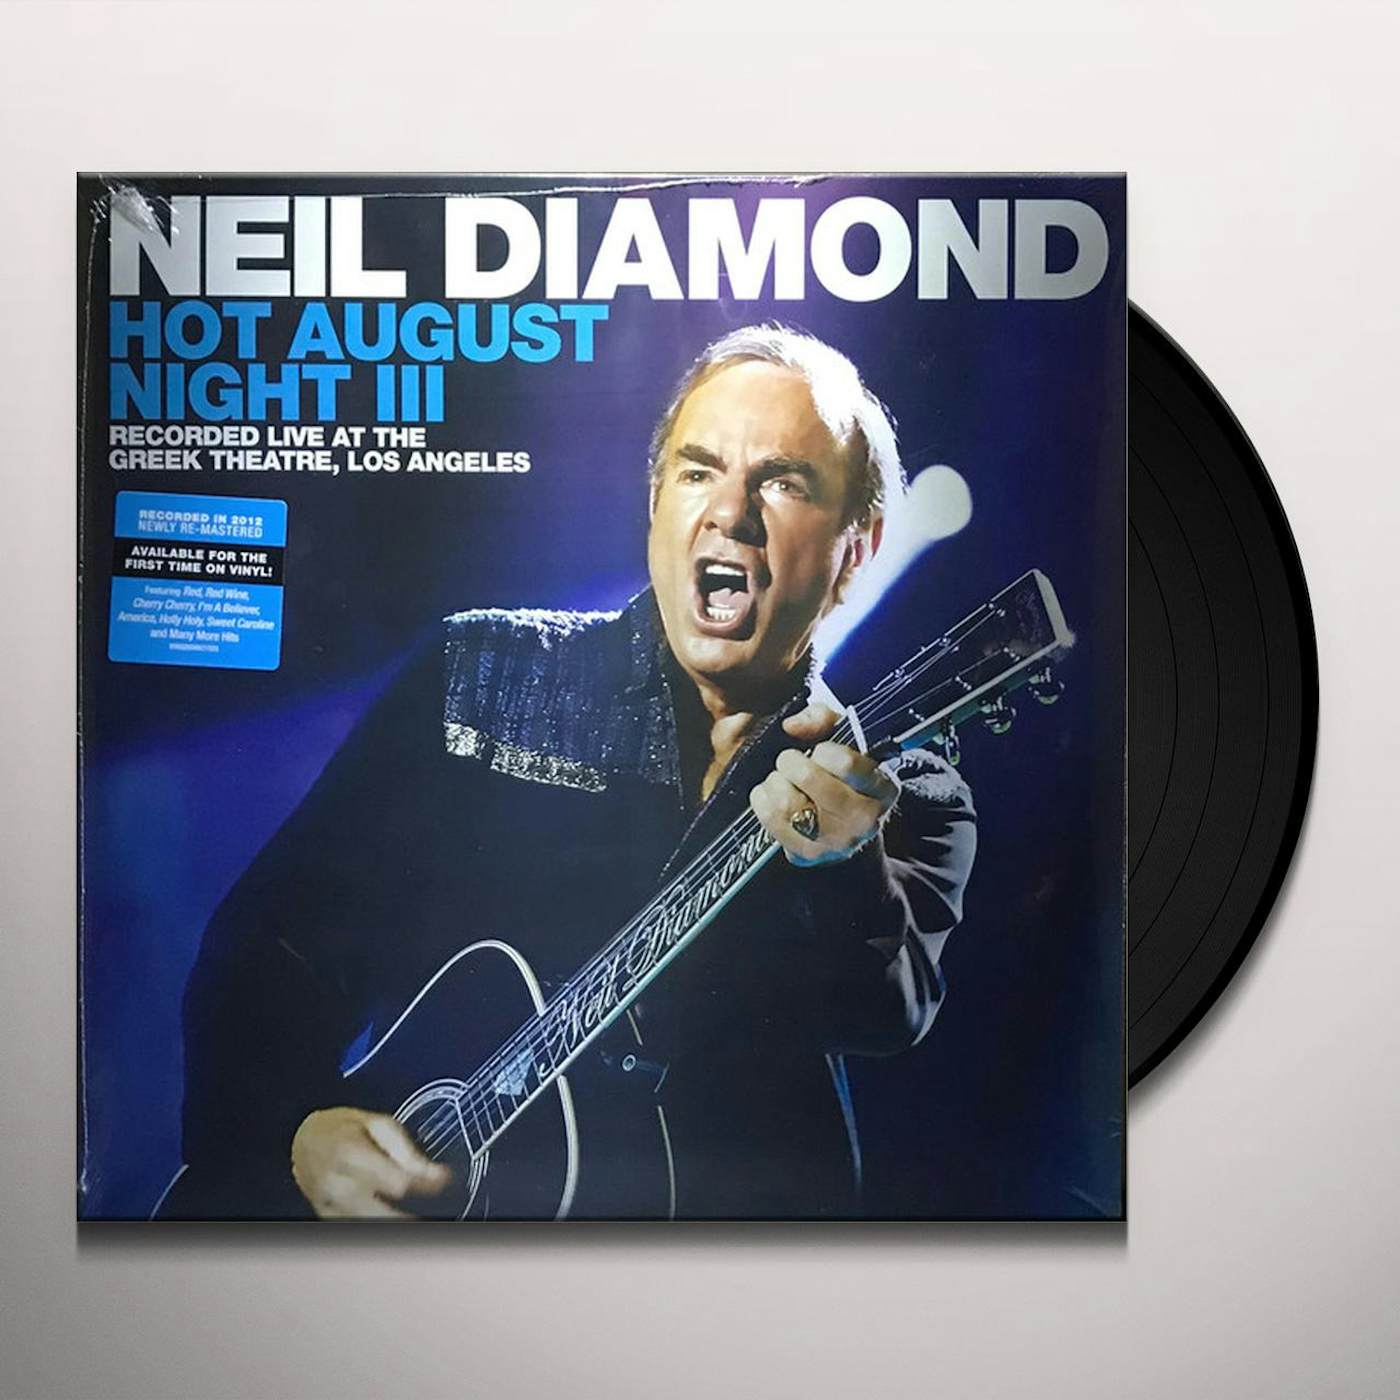 Neil Diamond Hot August Night III Vinyl Record